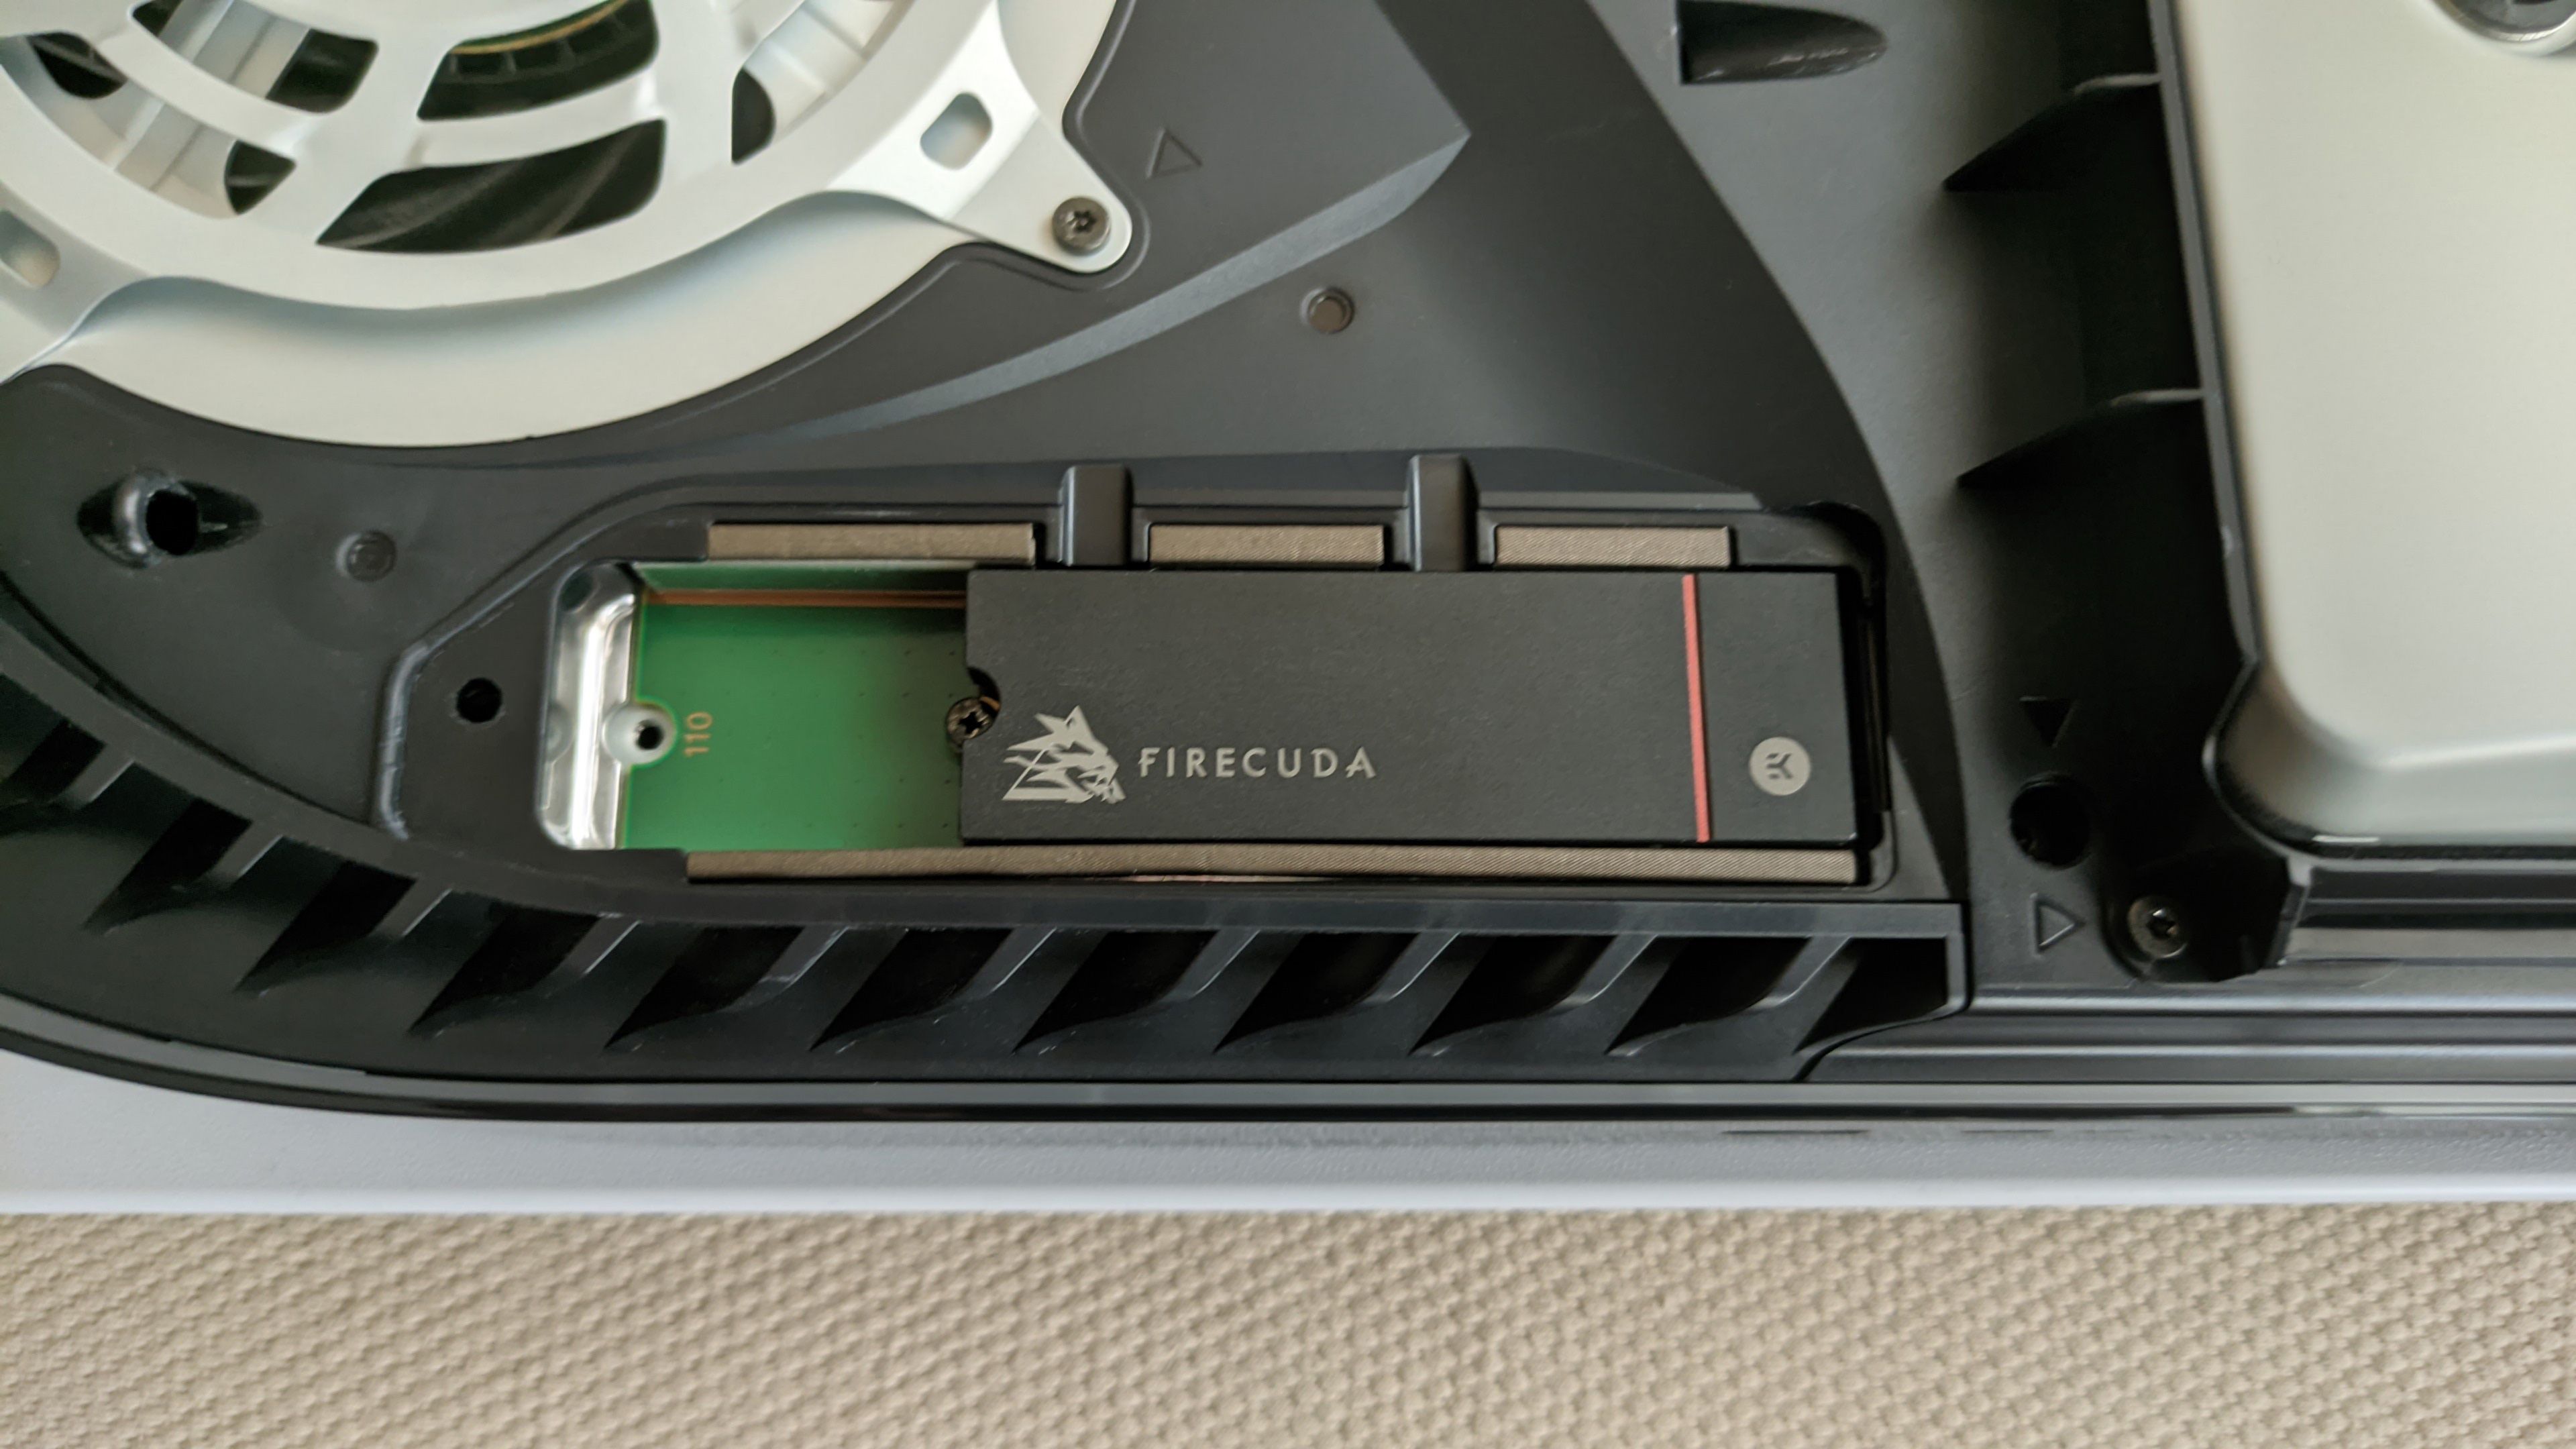 Probamos Firecuda 530, el disco SSD NVMe M.2 PCIe Gen 4 compatible